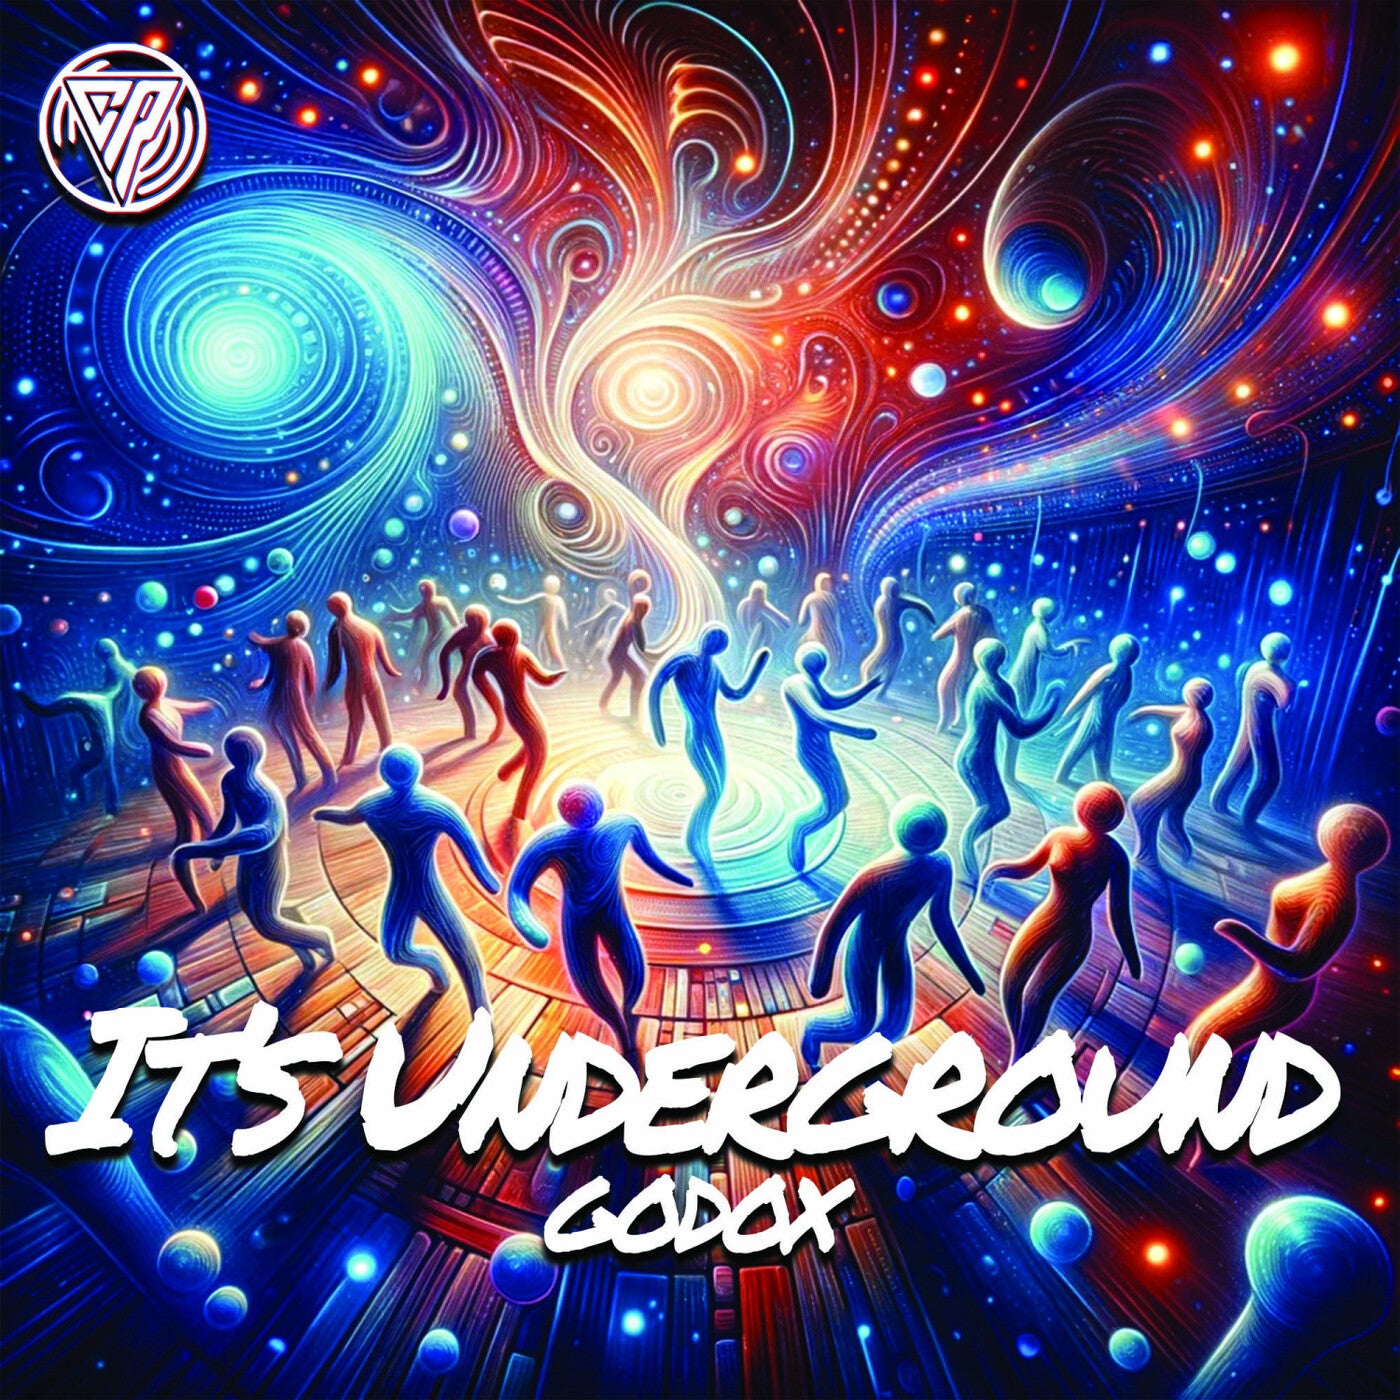 It's Underground